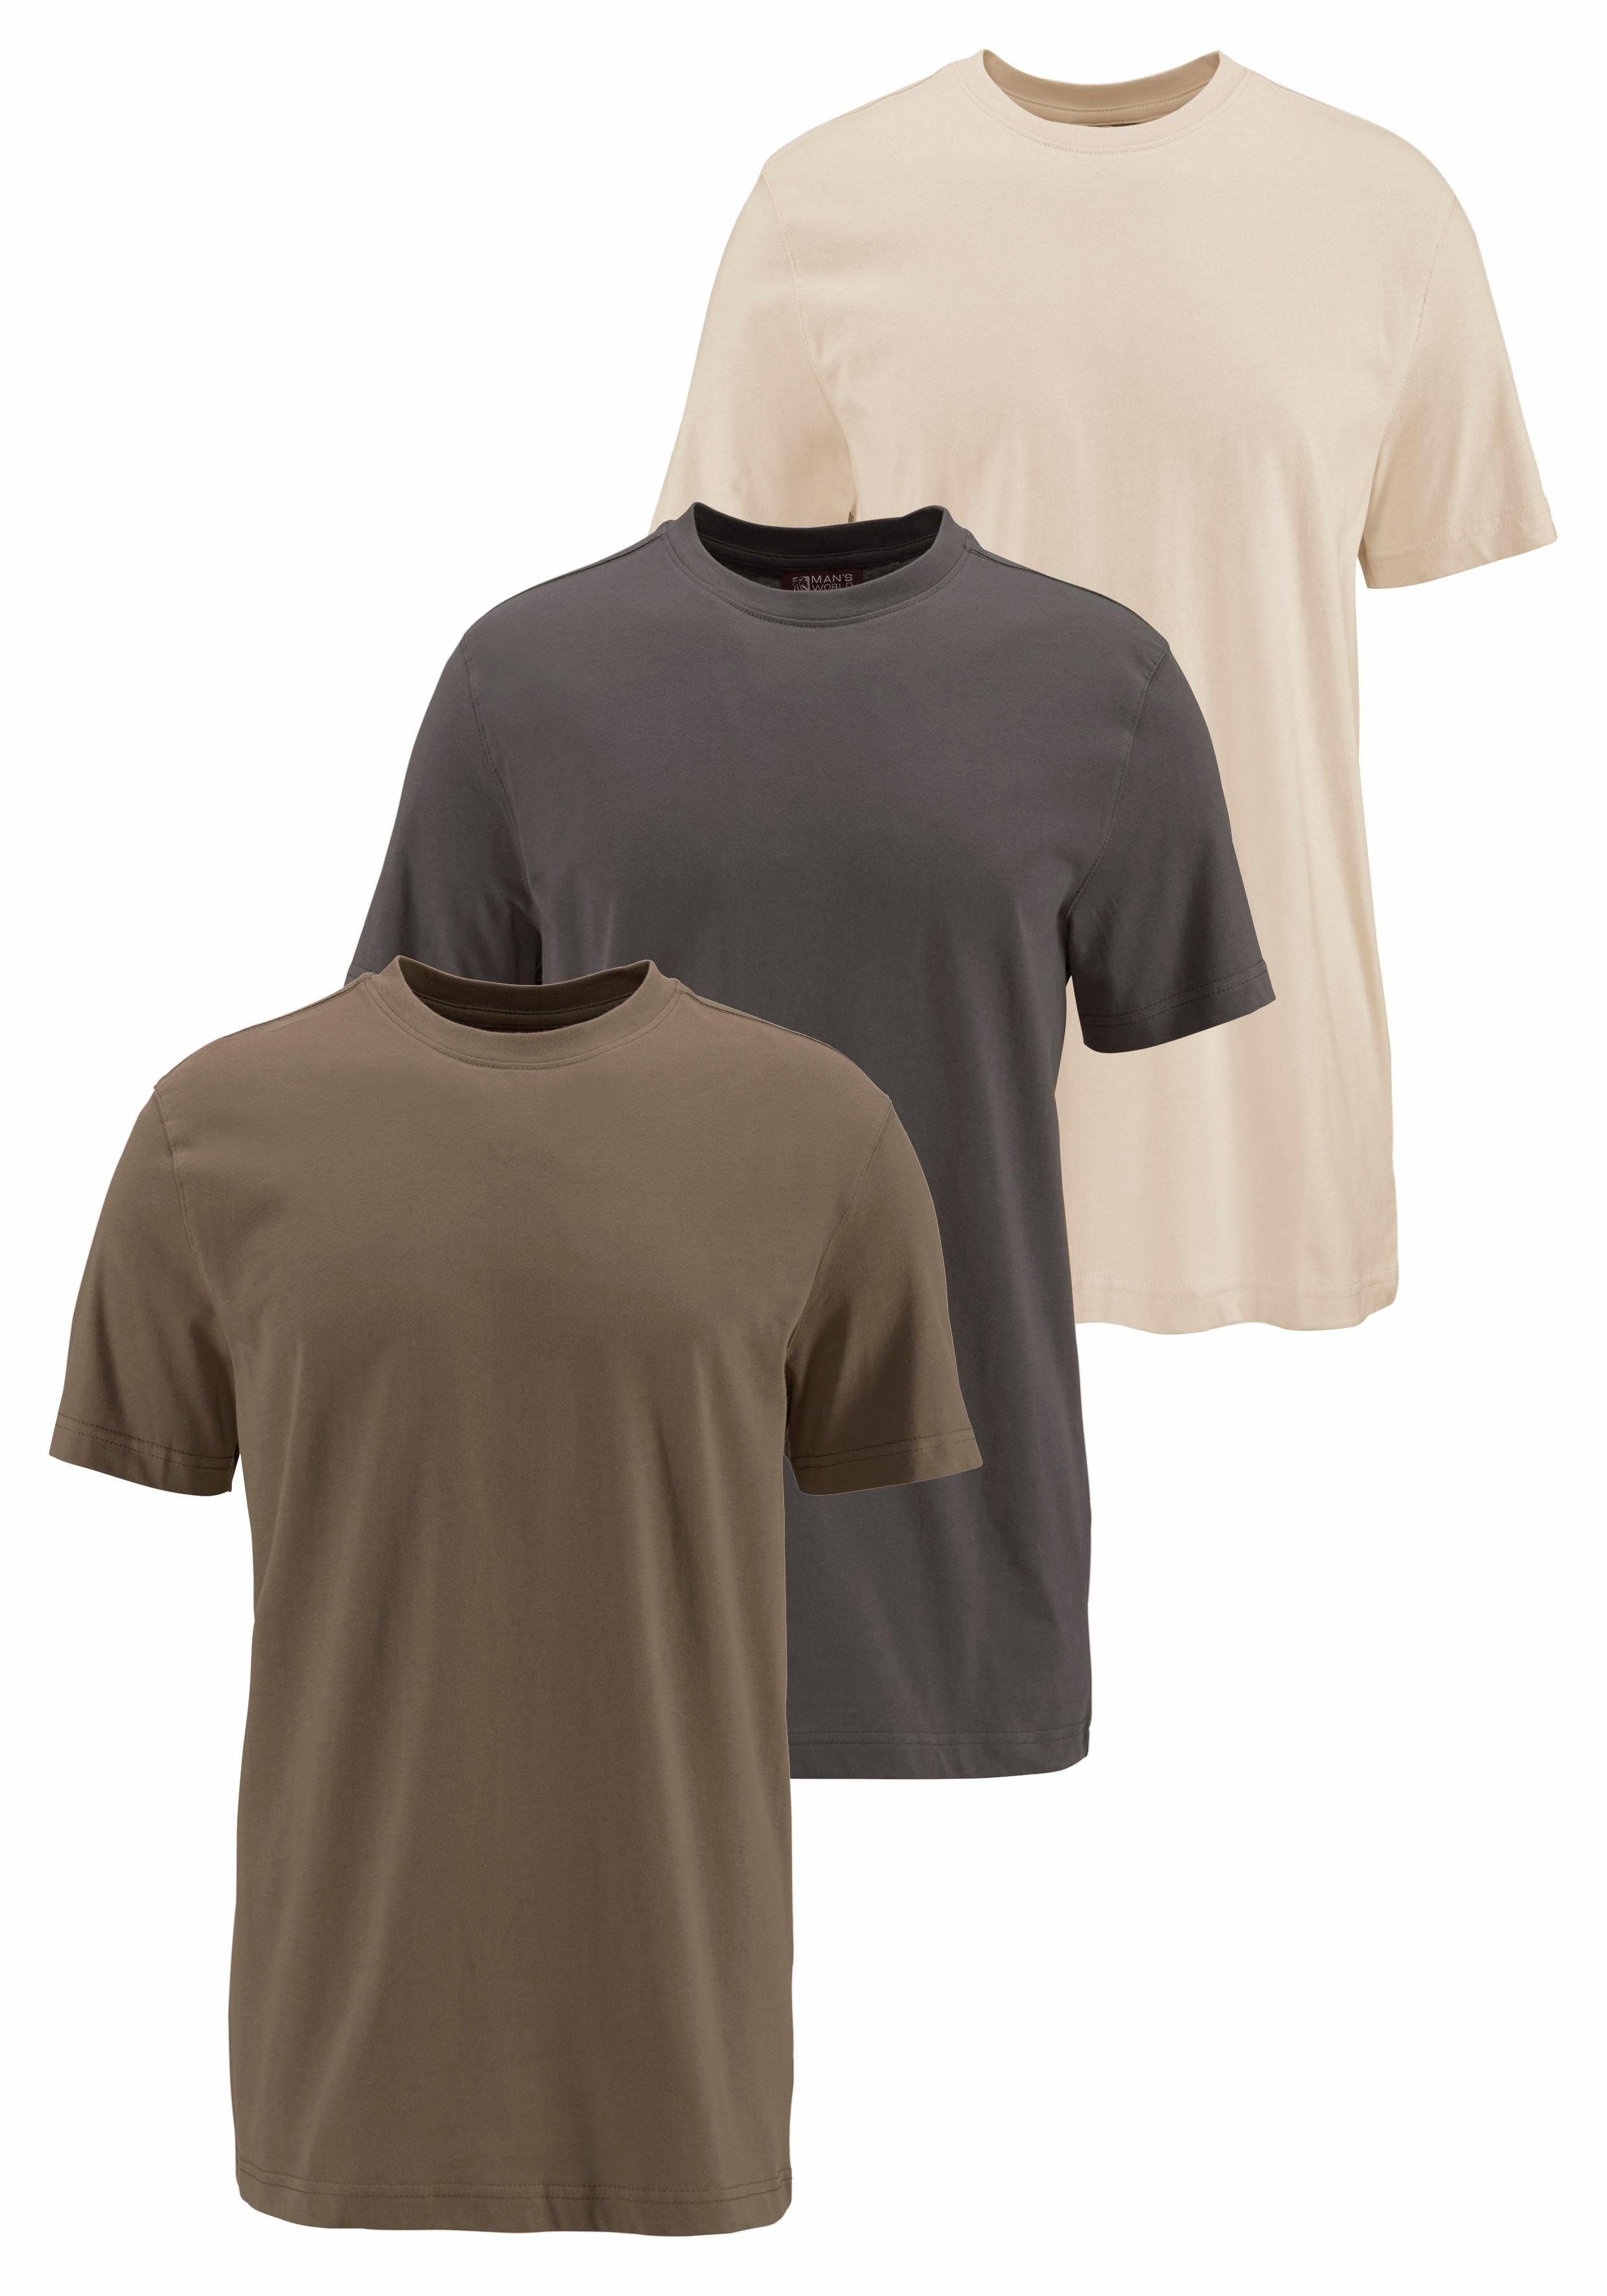 Man's World T-Shirt (Packung, 3-tlg., 3er-Pack) perfekt als Unterzieh- T-shirt olivgrün, dunkeloliv, beige